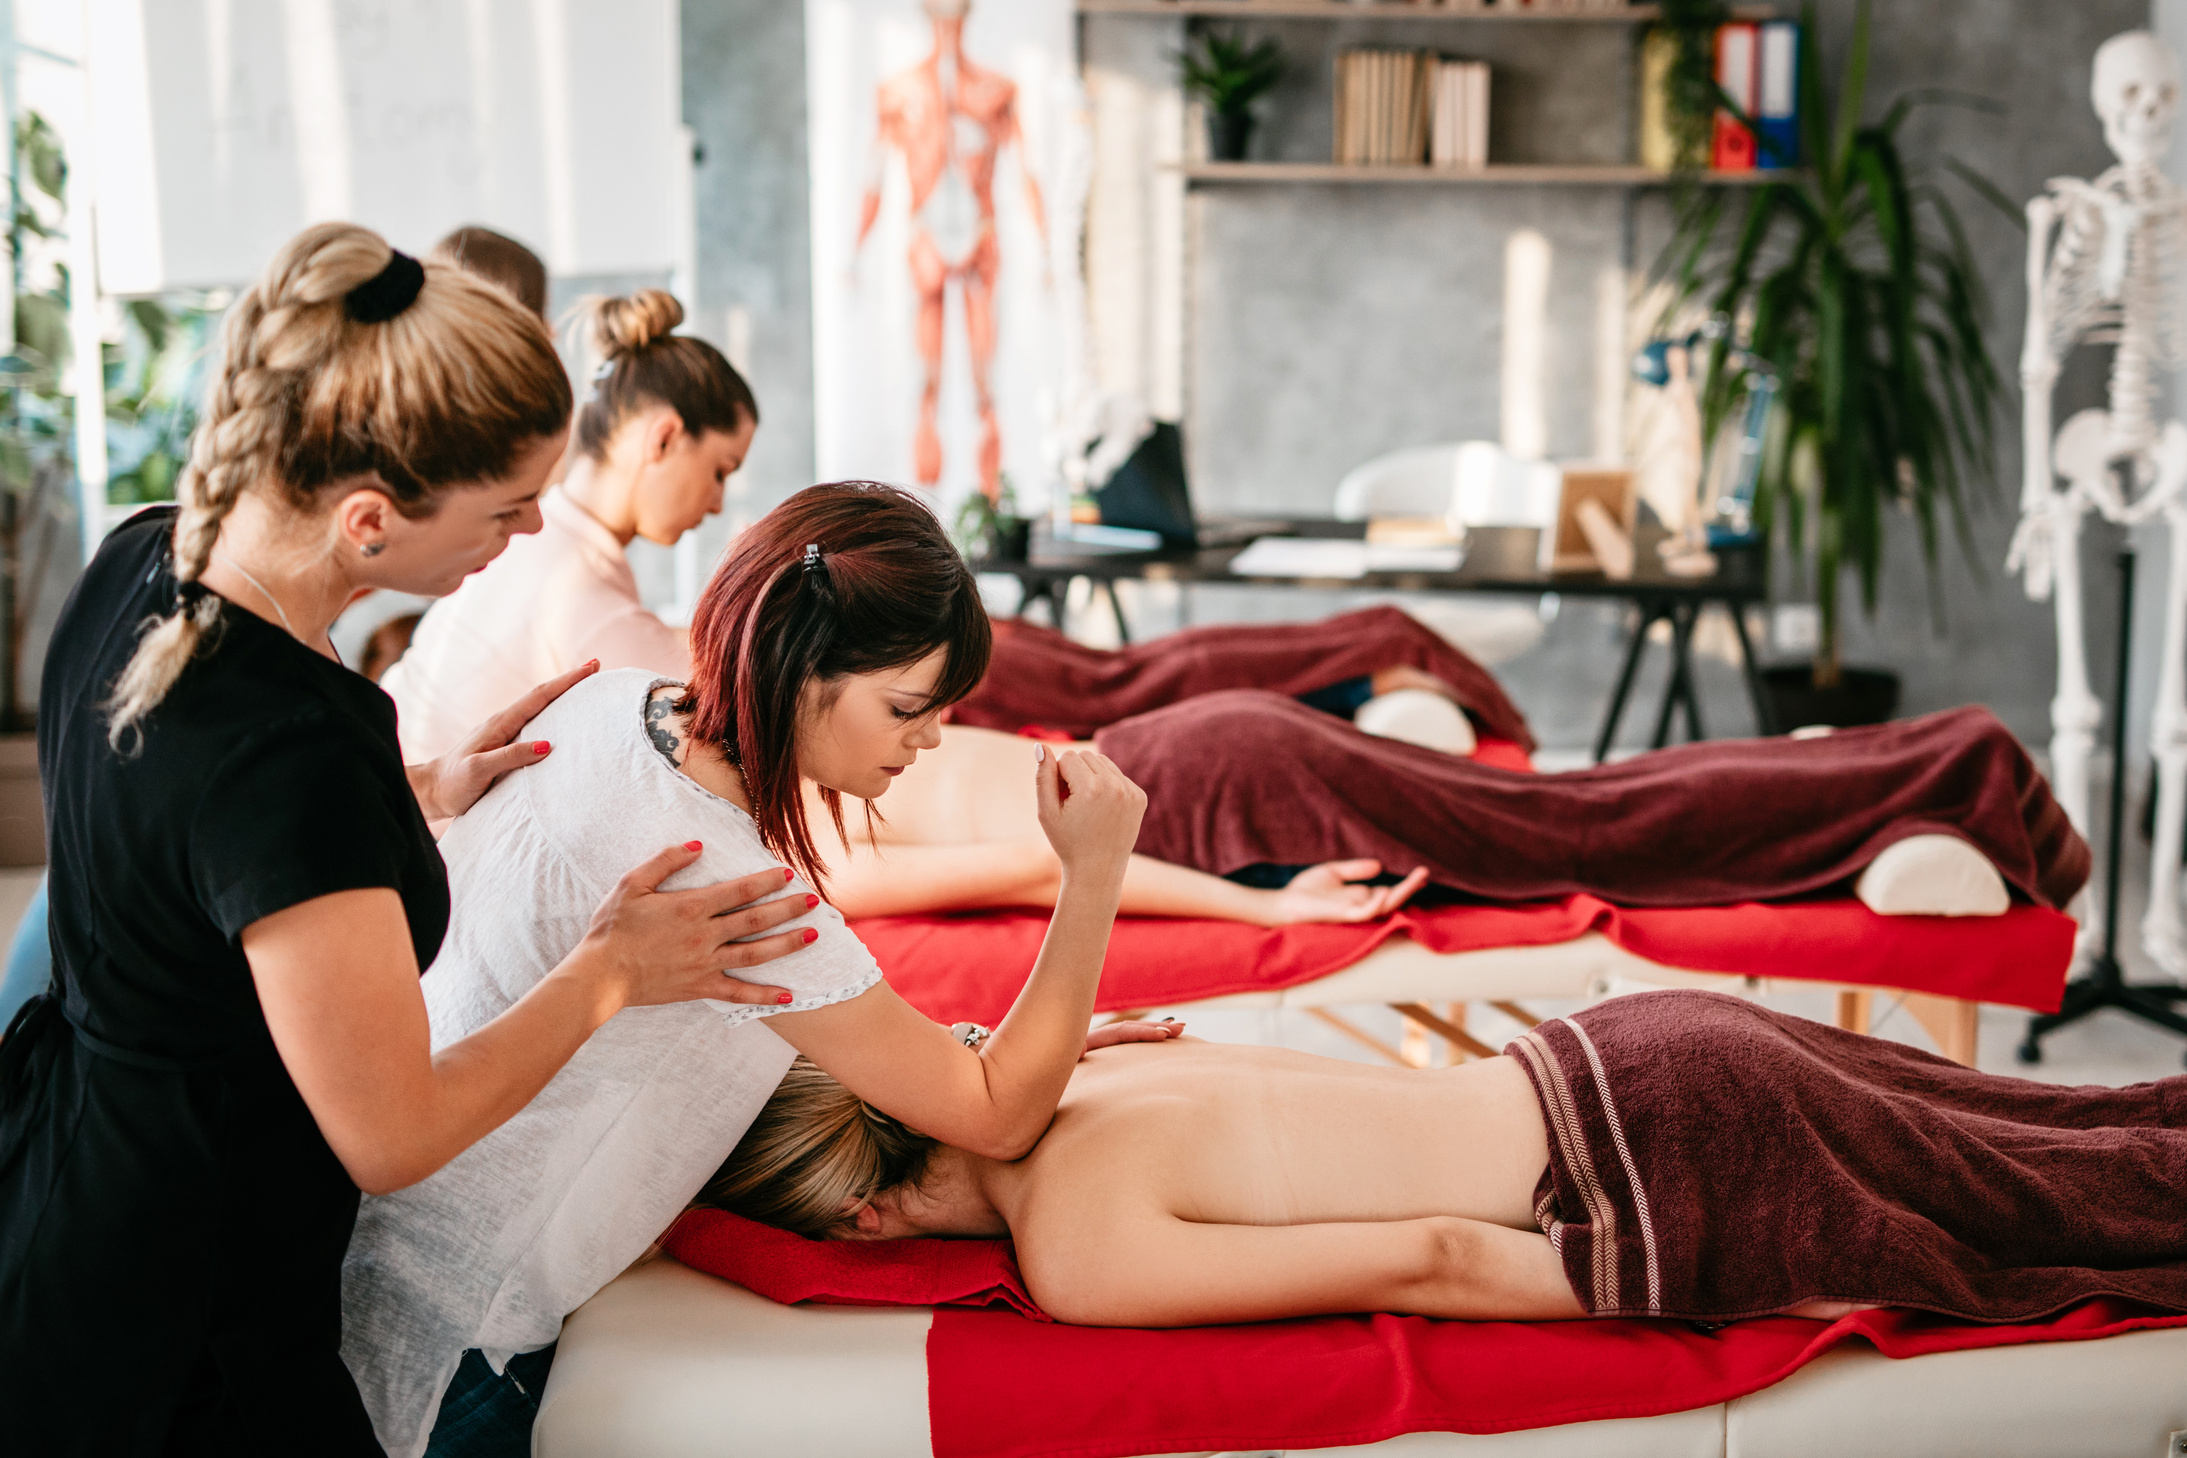 Practicing massage in massage school